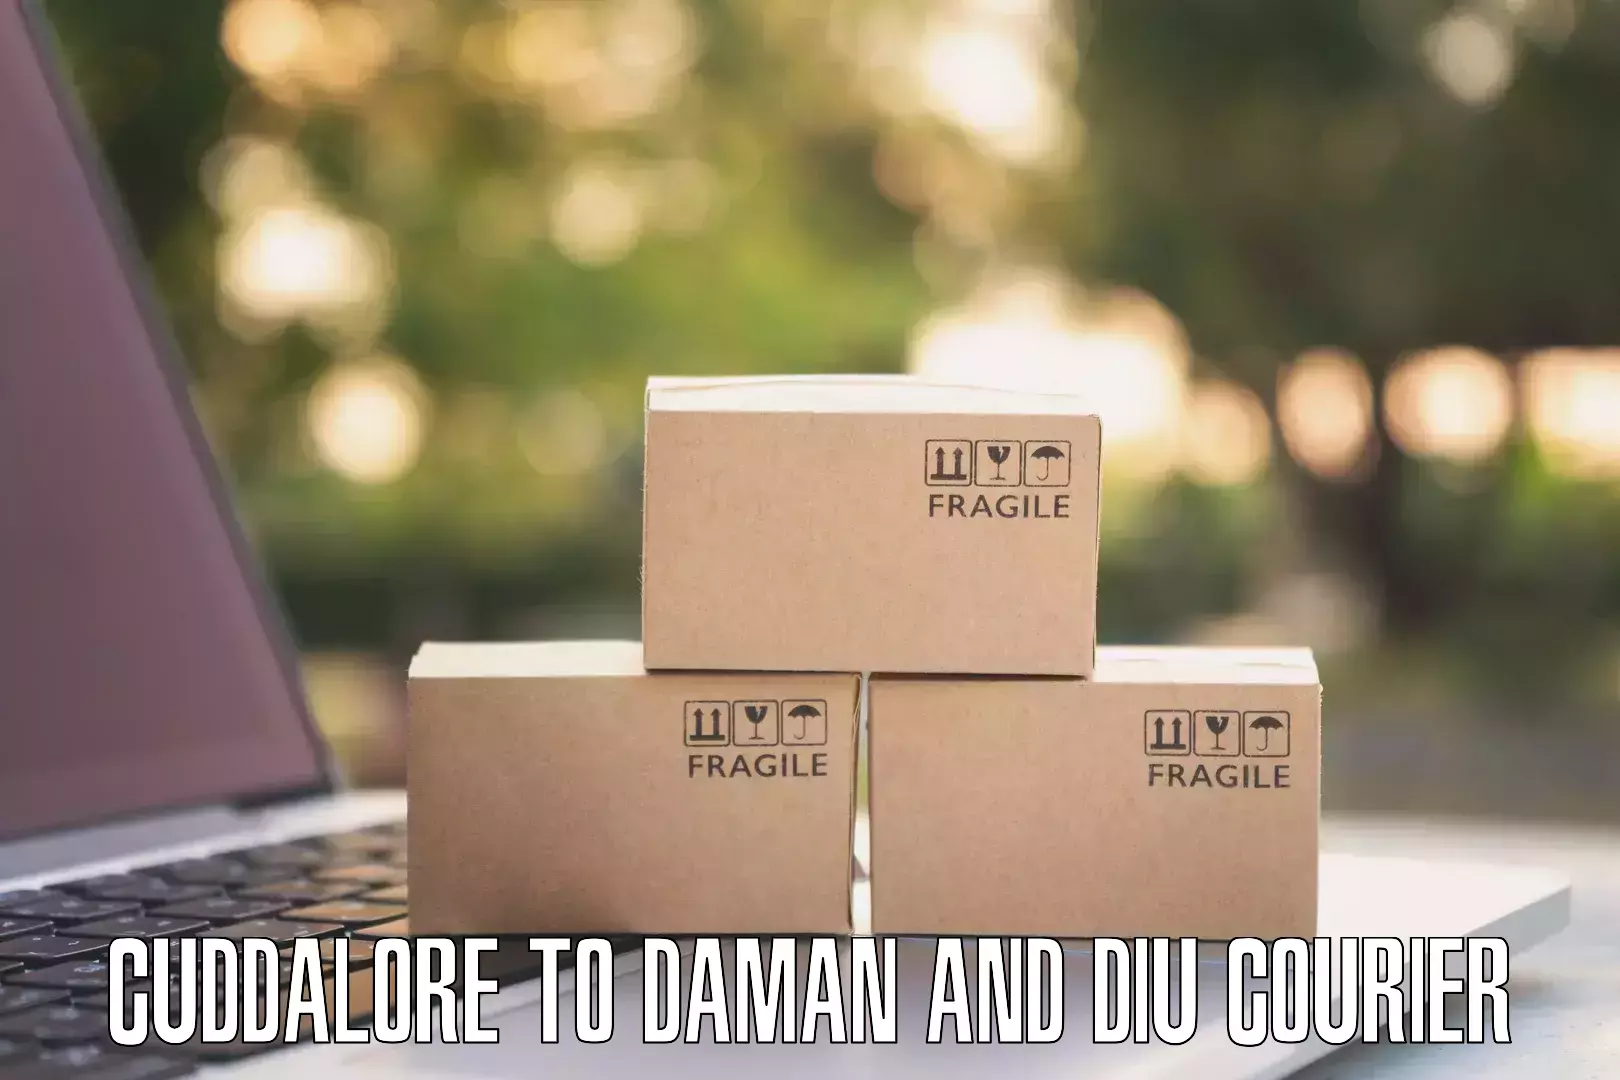 E-commerce fulfillment Cuddalore to Daman and Diu